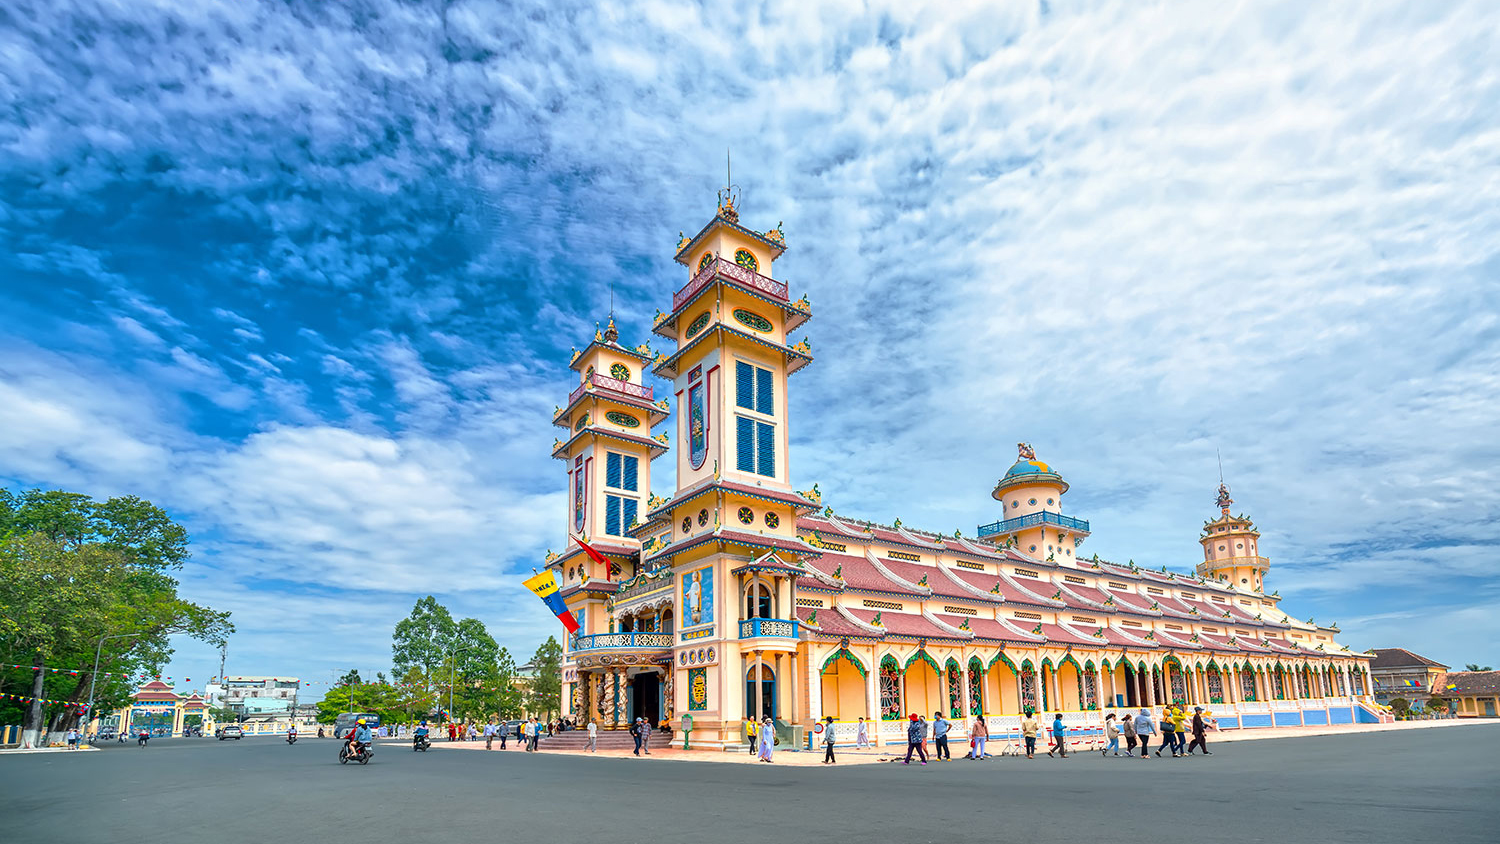 Thuê xe Cần Thơ đi Tây Ninh 1 ngày - Nguyễn Duy Travel